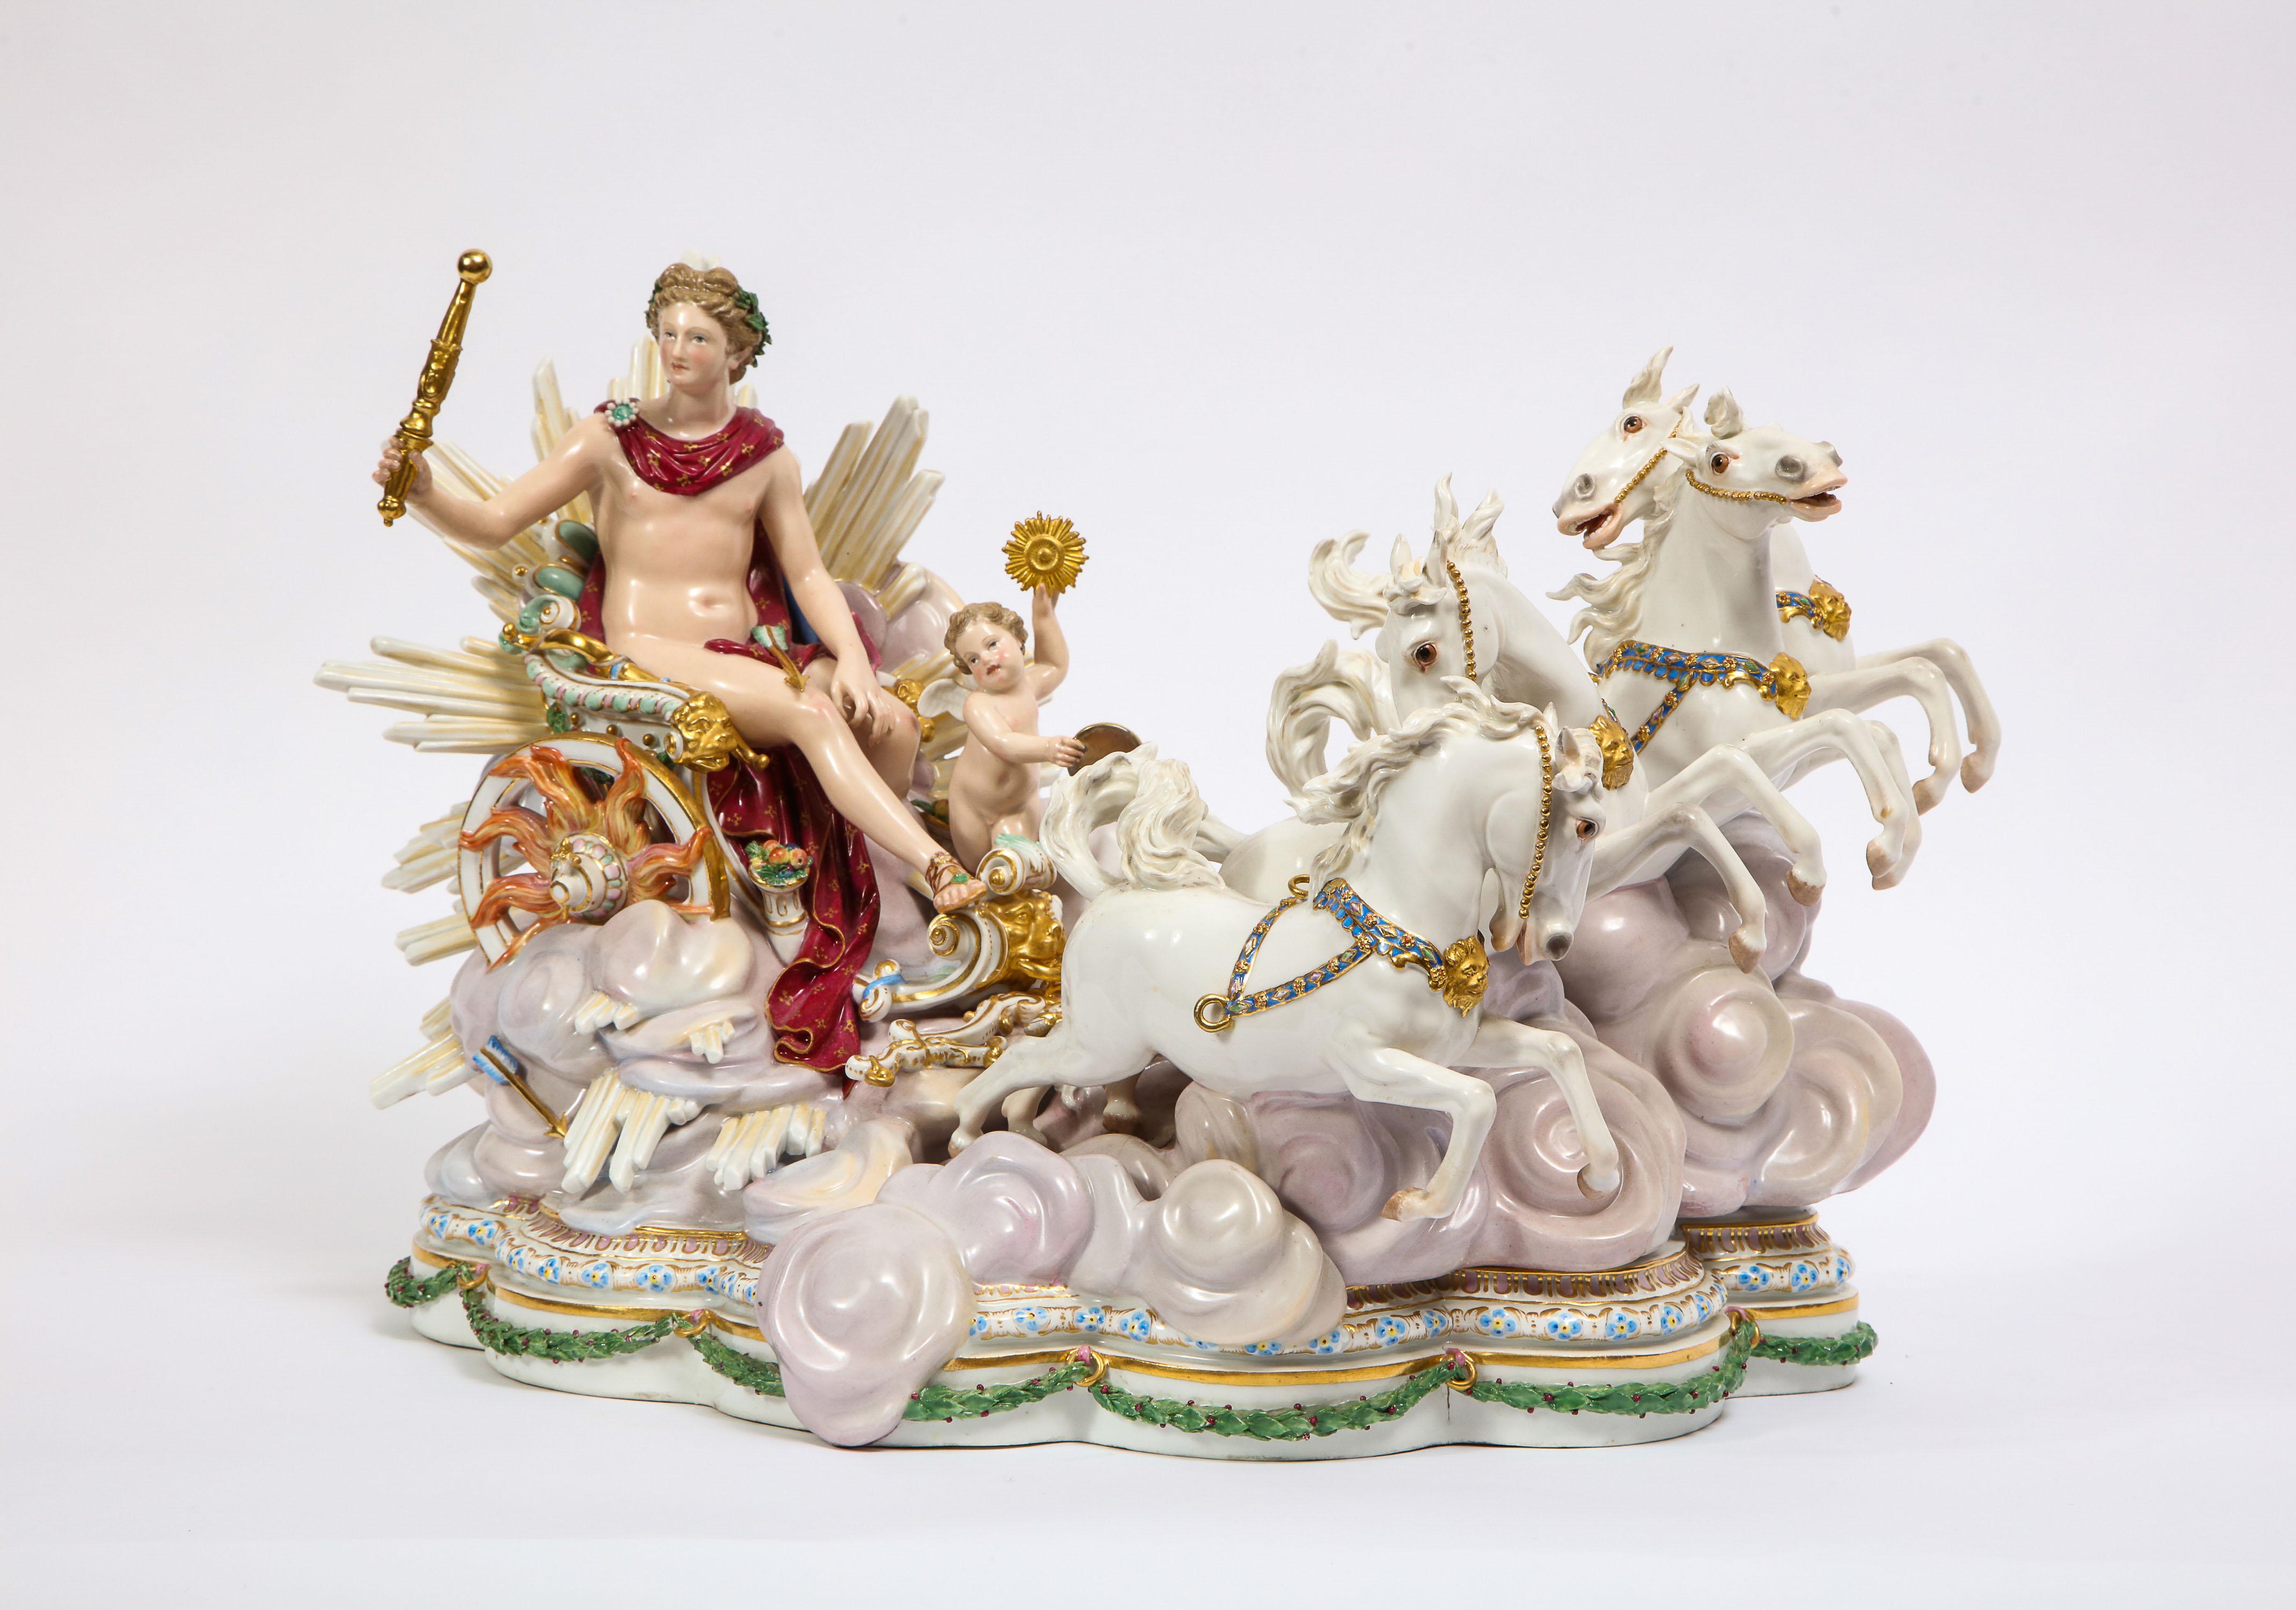 Un magnifique et assez grand groupe en porcelaine de Meissen de style baroque, de qualité muséale, représentant le char d'Apollon, le dieu Soleil, avec sa servante Putti, conçu à l'origine par Johann Joachim Kändler en 1772-1773 pour la tsarine